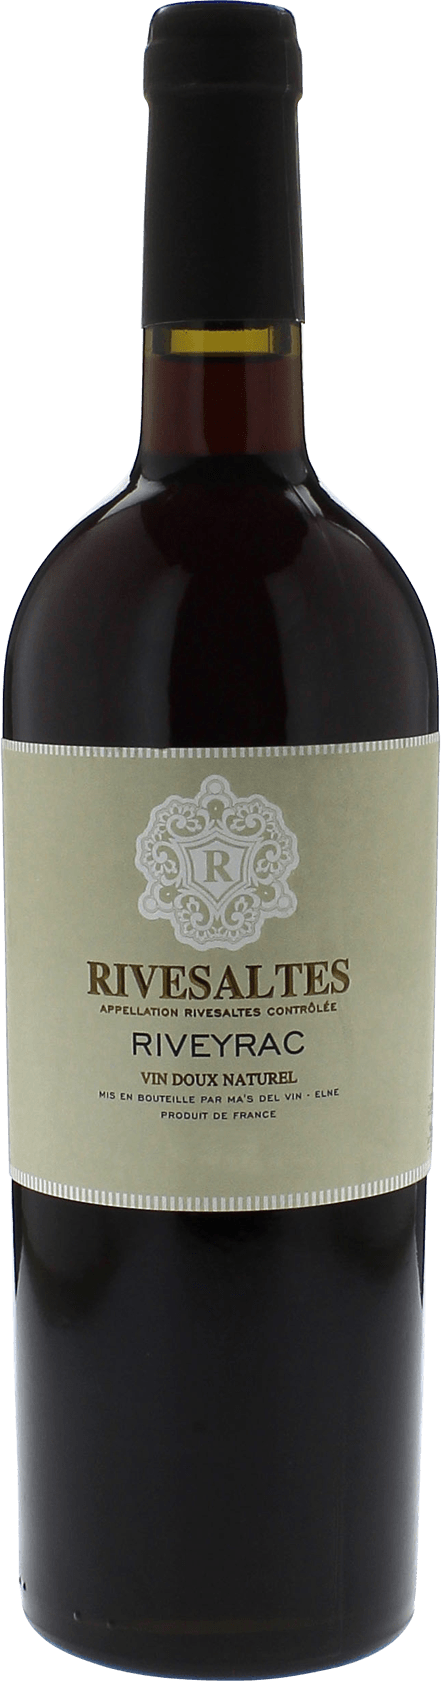 Rivesaltes riveyrac 1980 Vin doux naturel Rivesaltes, Vin doux naturel